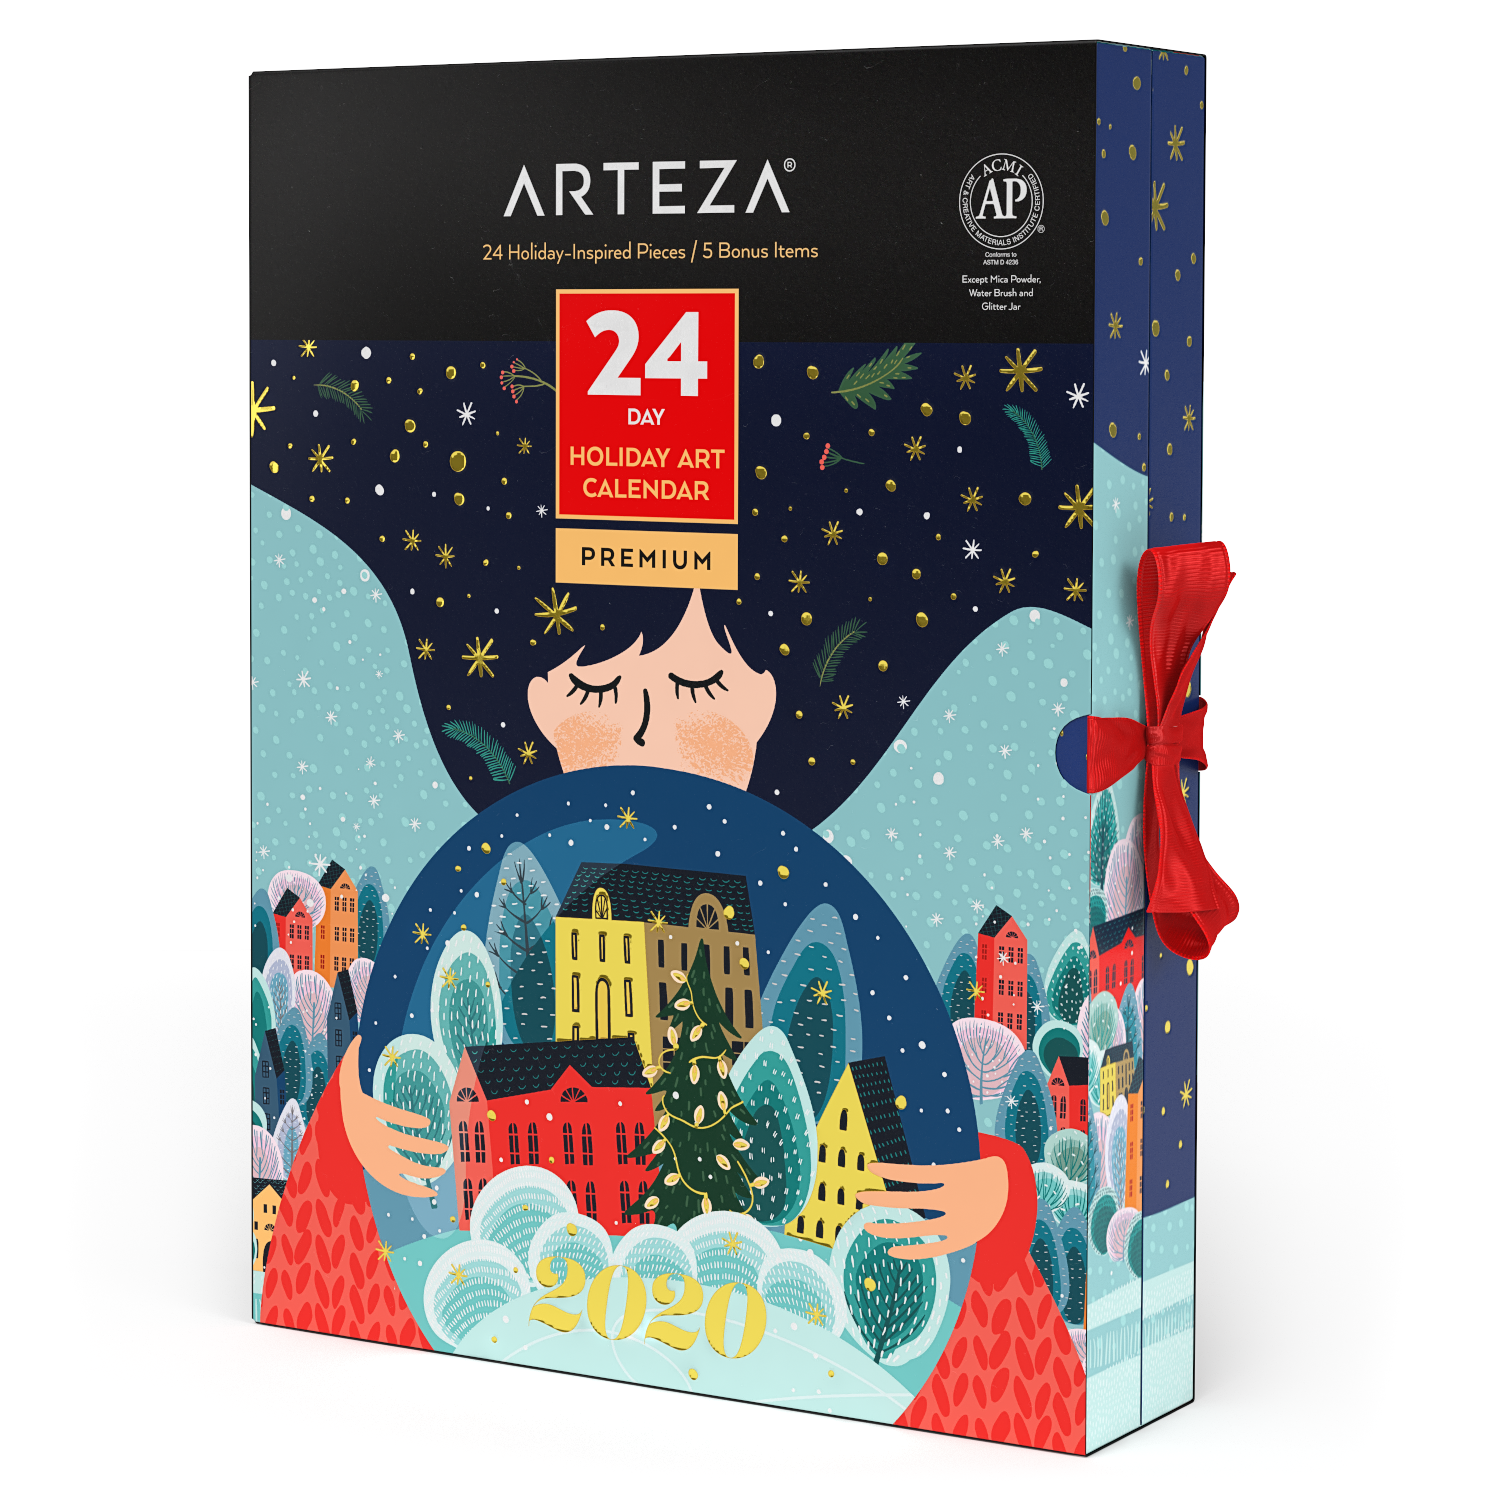 2020 Arteza Art Supplies Advent Calendar Available Now! Hello